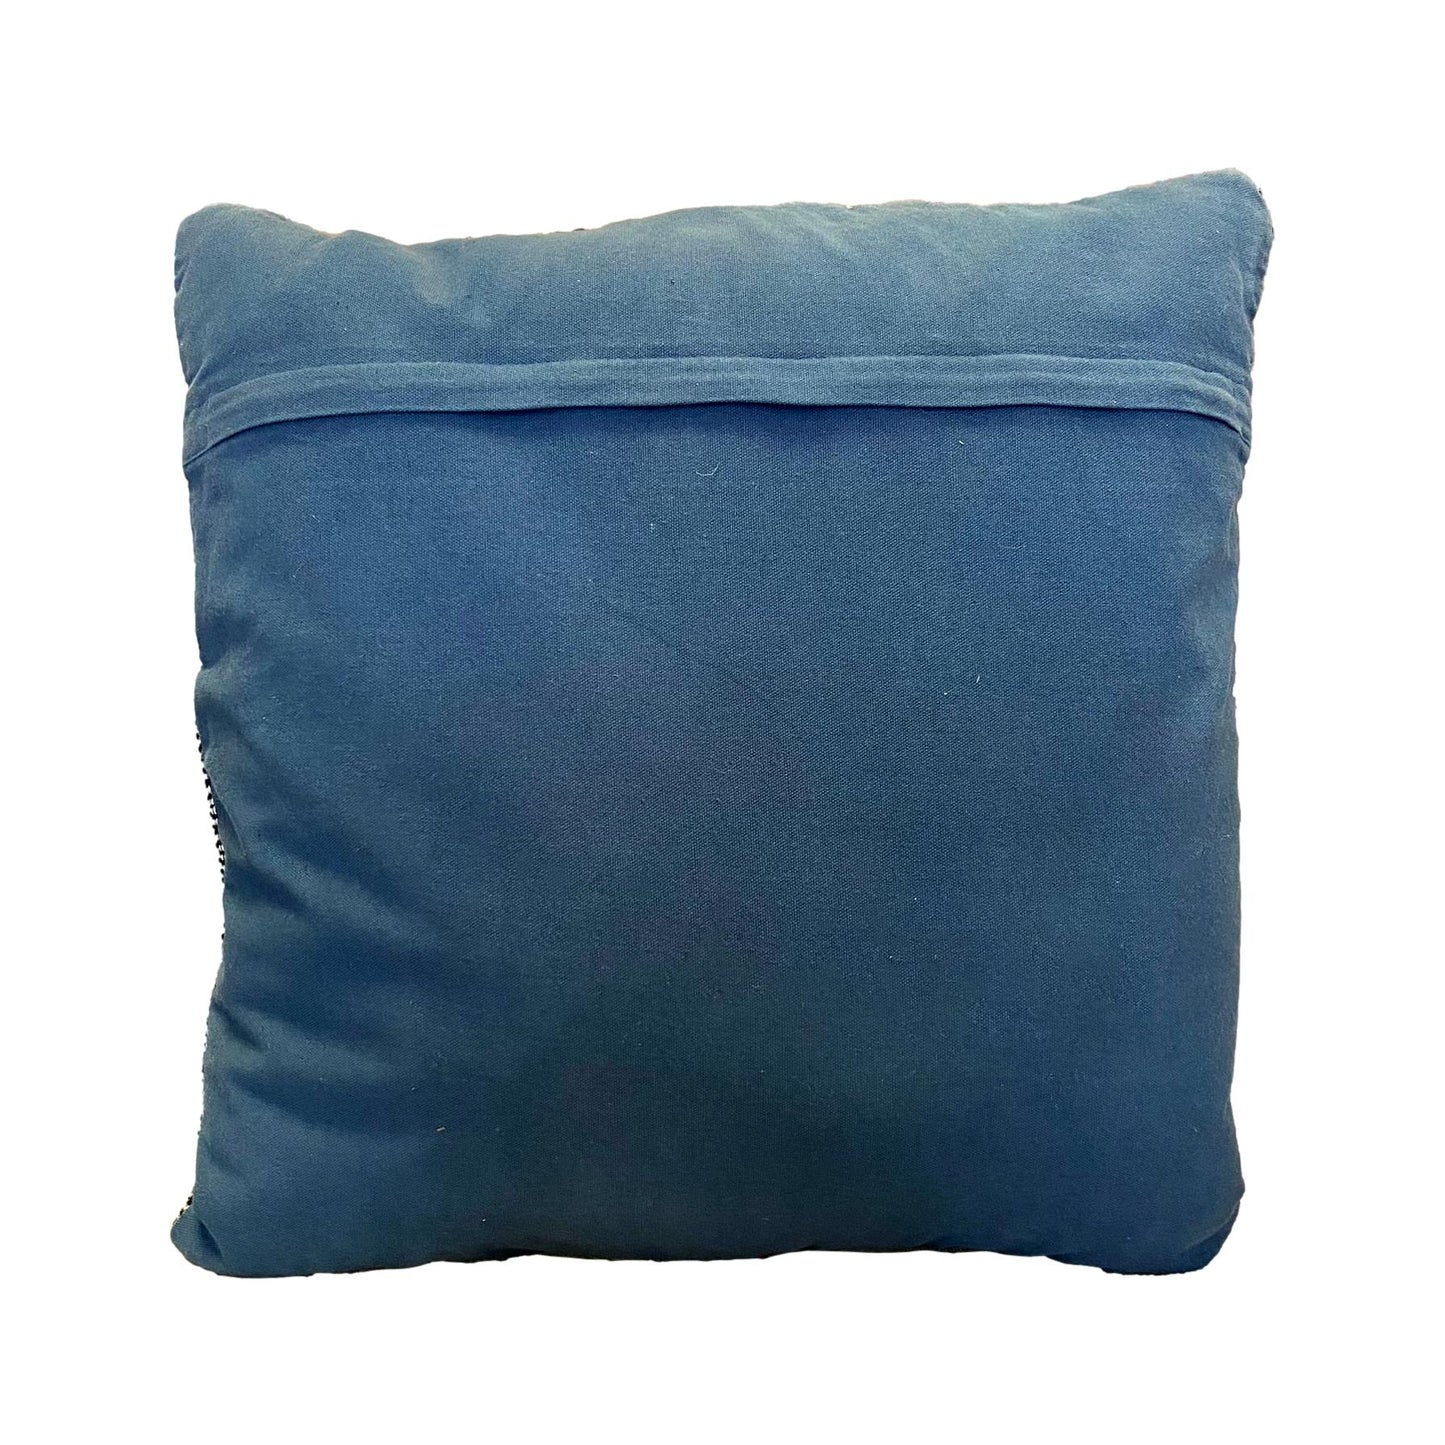 Marrakech Pillow